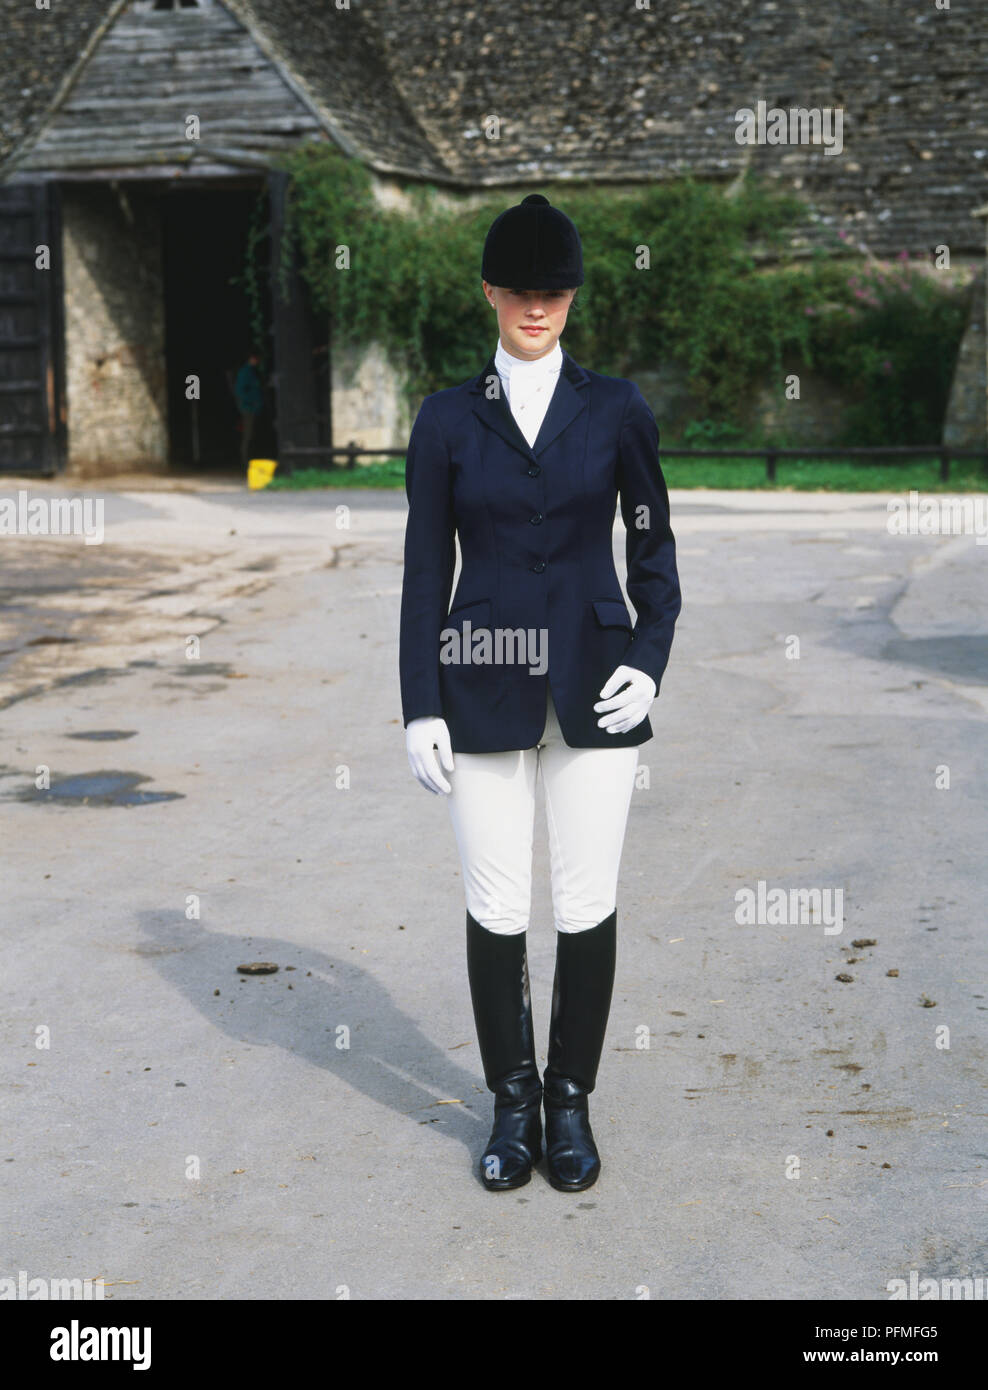 gatear Dinkarville callejón Mujer en blanco y negro elegante traje de equitación Fotografía de stock -  Alamy